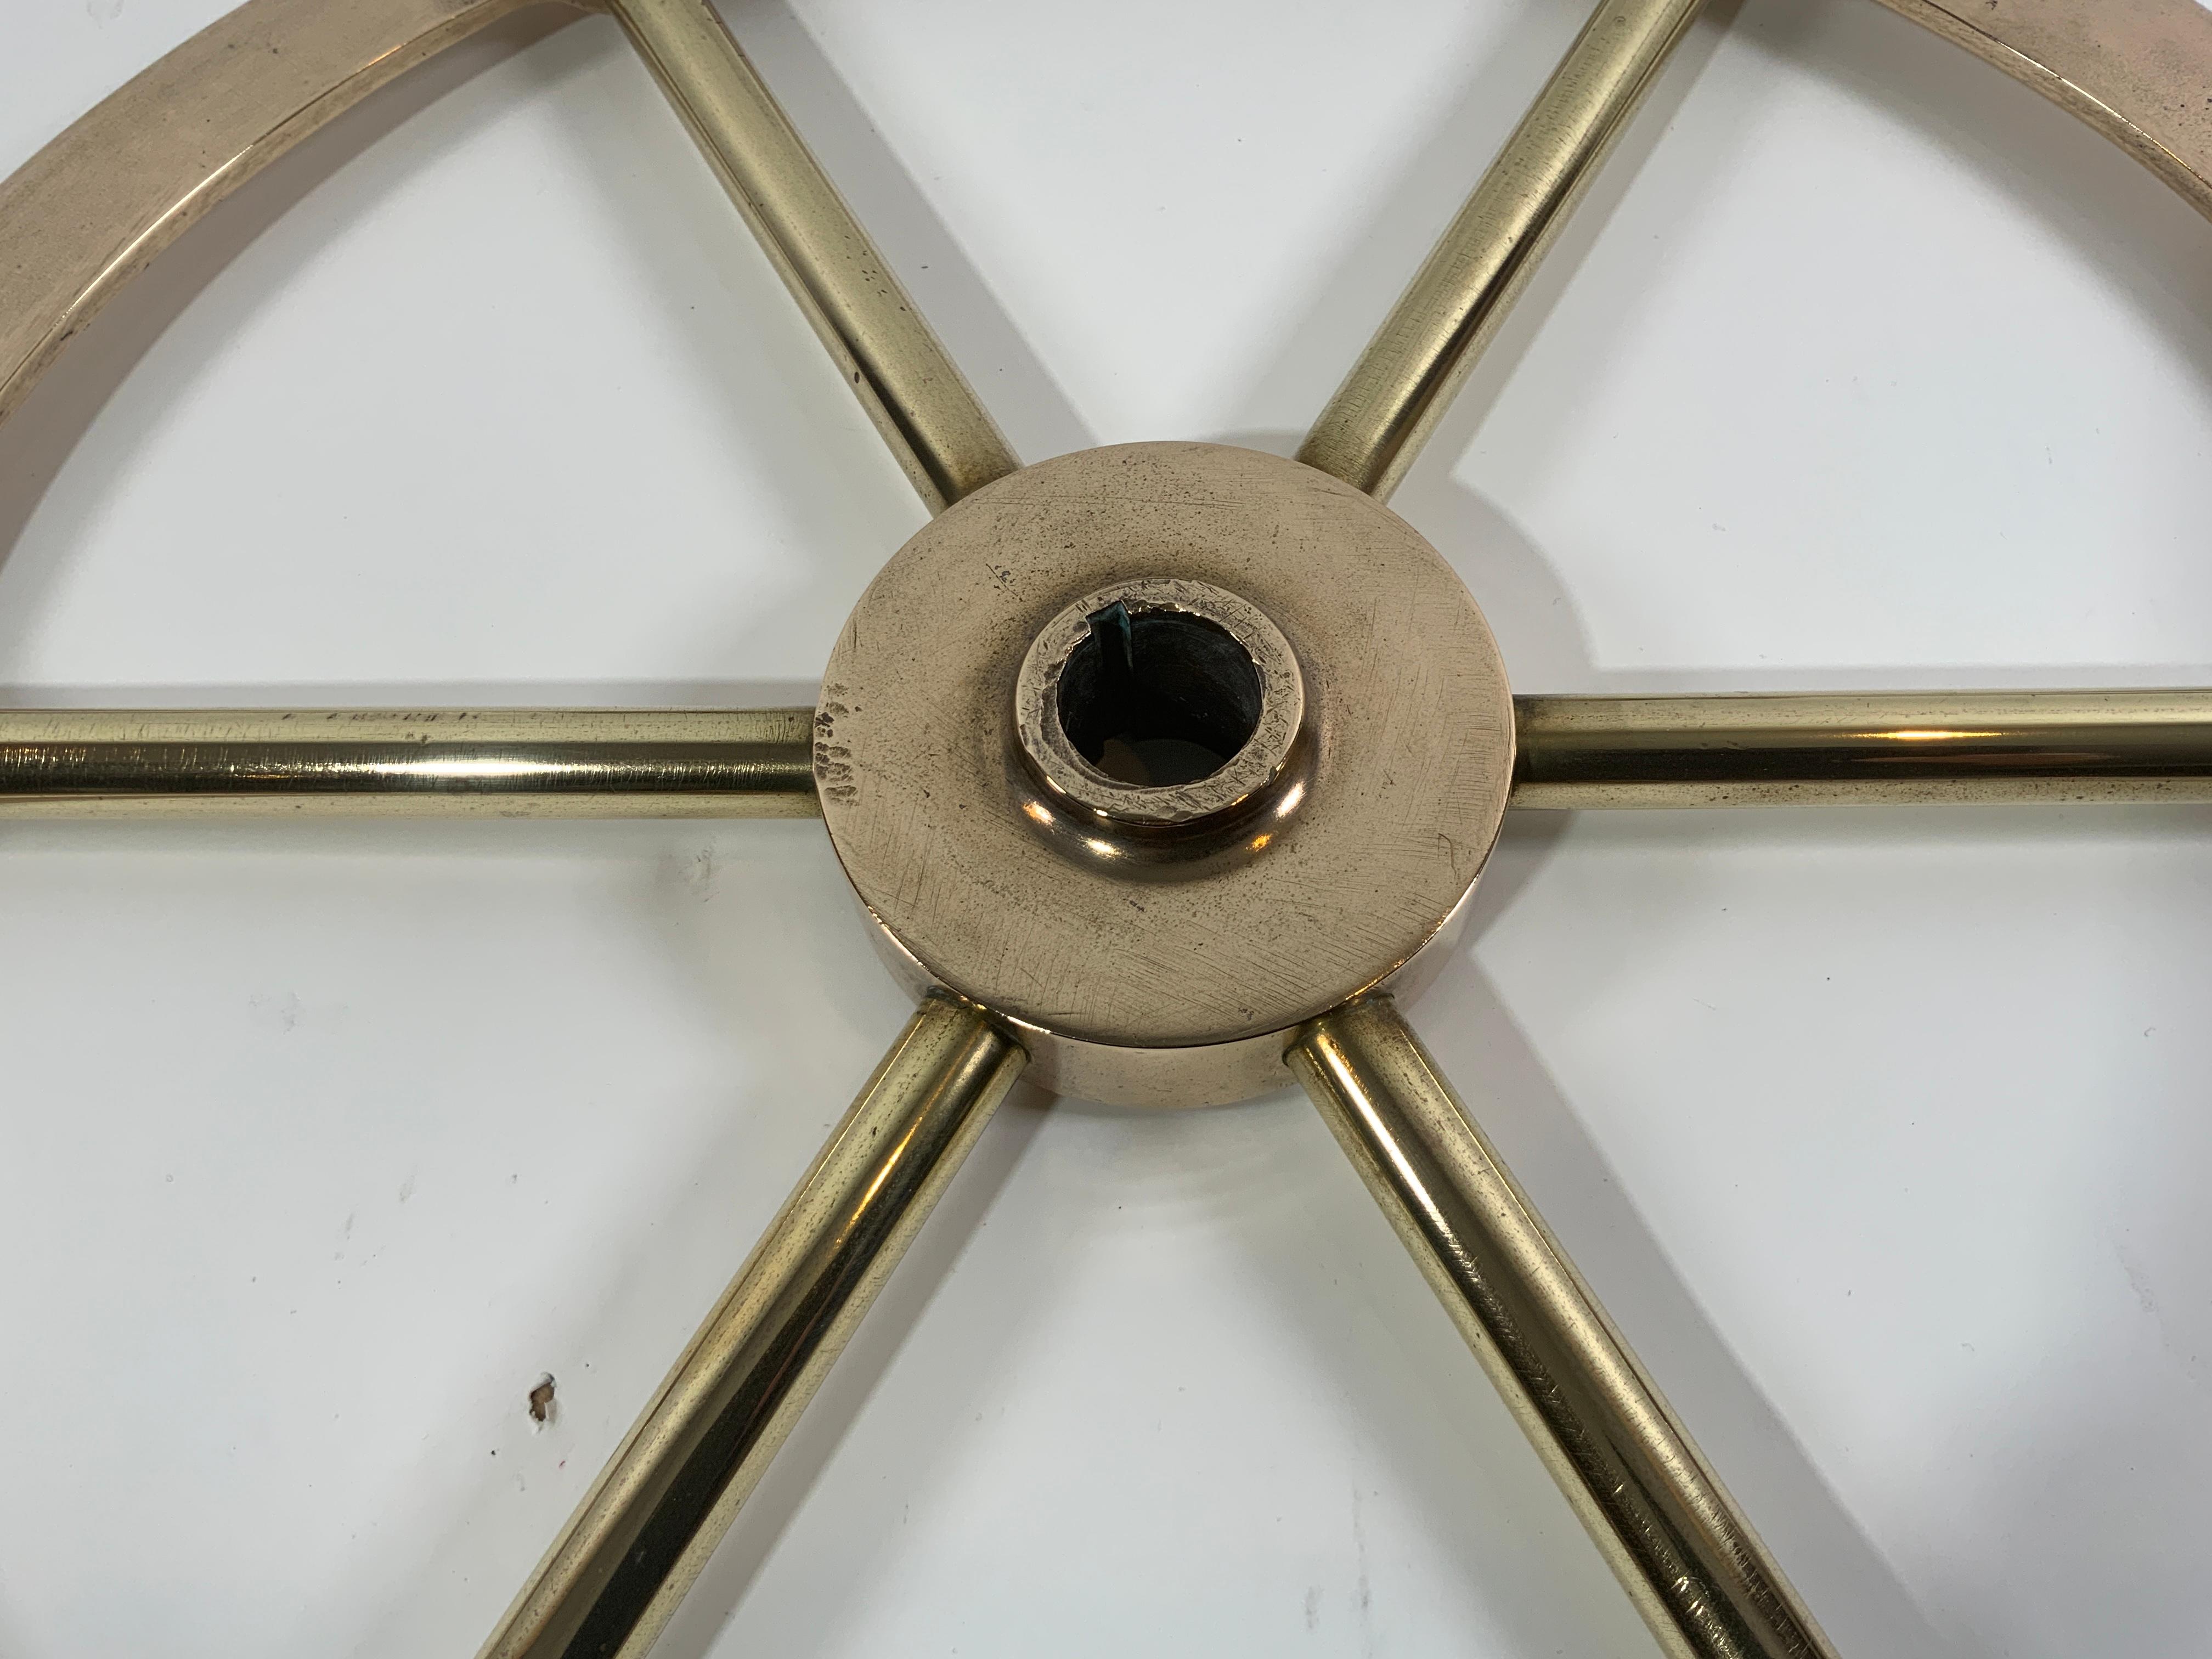 Six Spoke Solid Brass Yacht Wheel For Sale 1